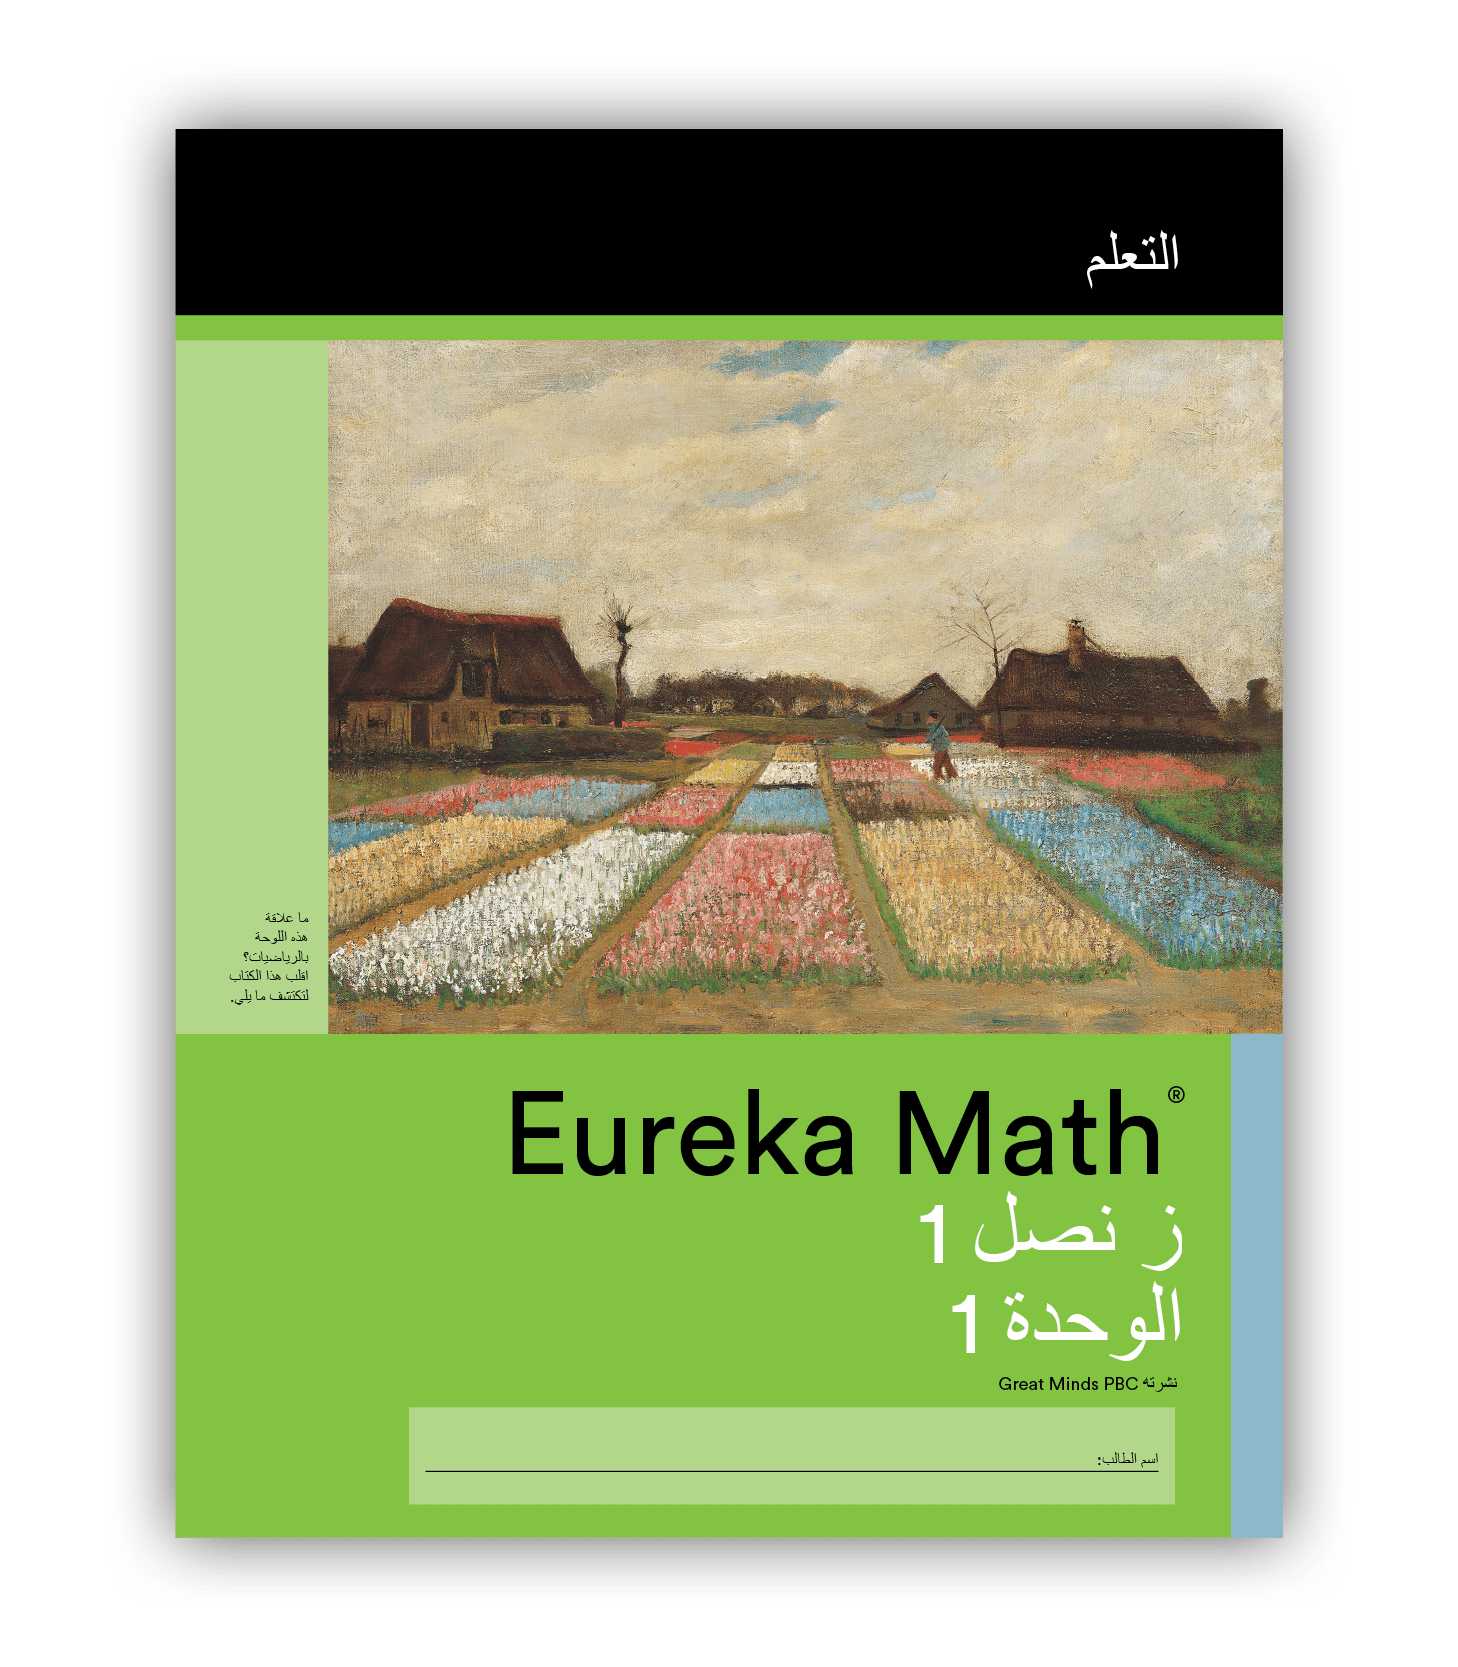 Eureka Math Learn Book in Arabic for Grade 1